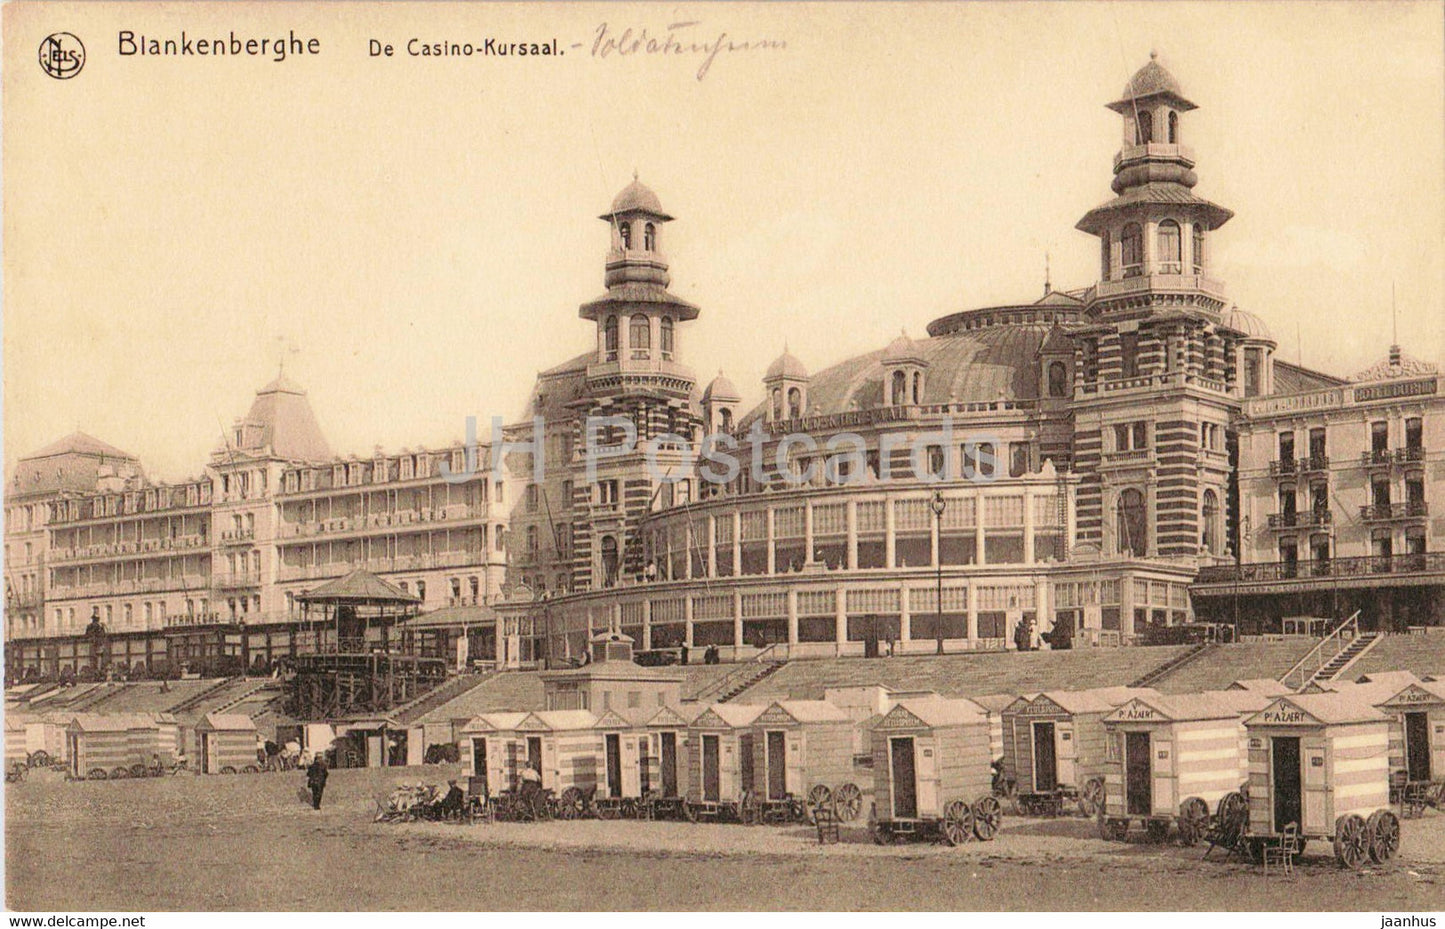 Blankenberghe - Blankenberge - De Casino Kursaal - old postcard - Belgium - used - JH Postcards